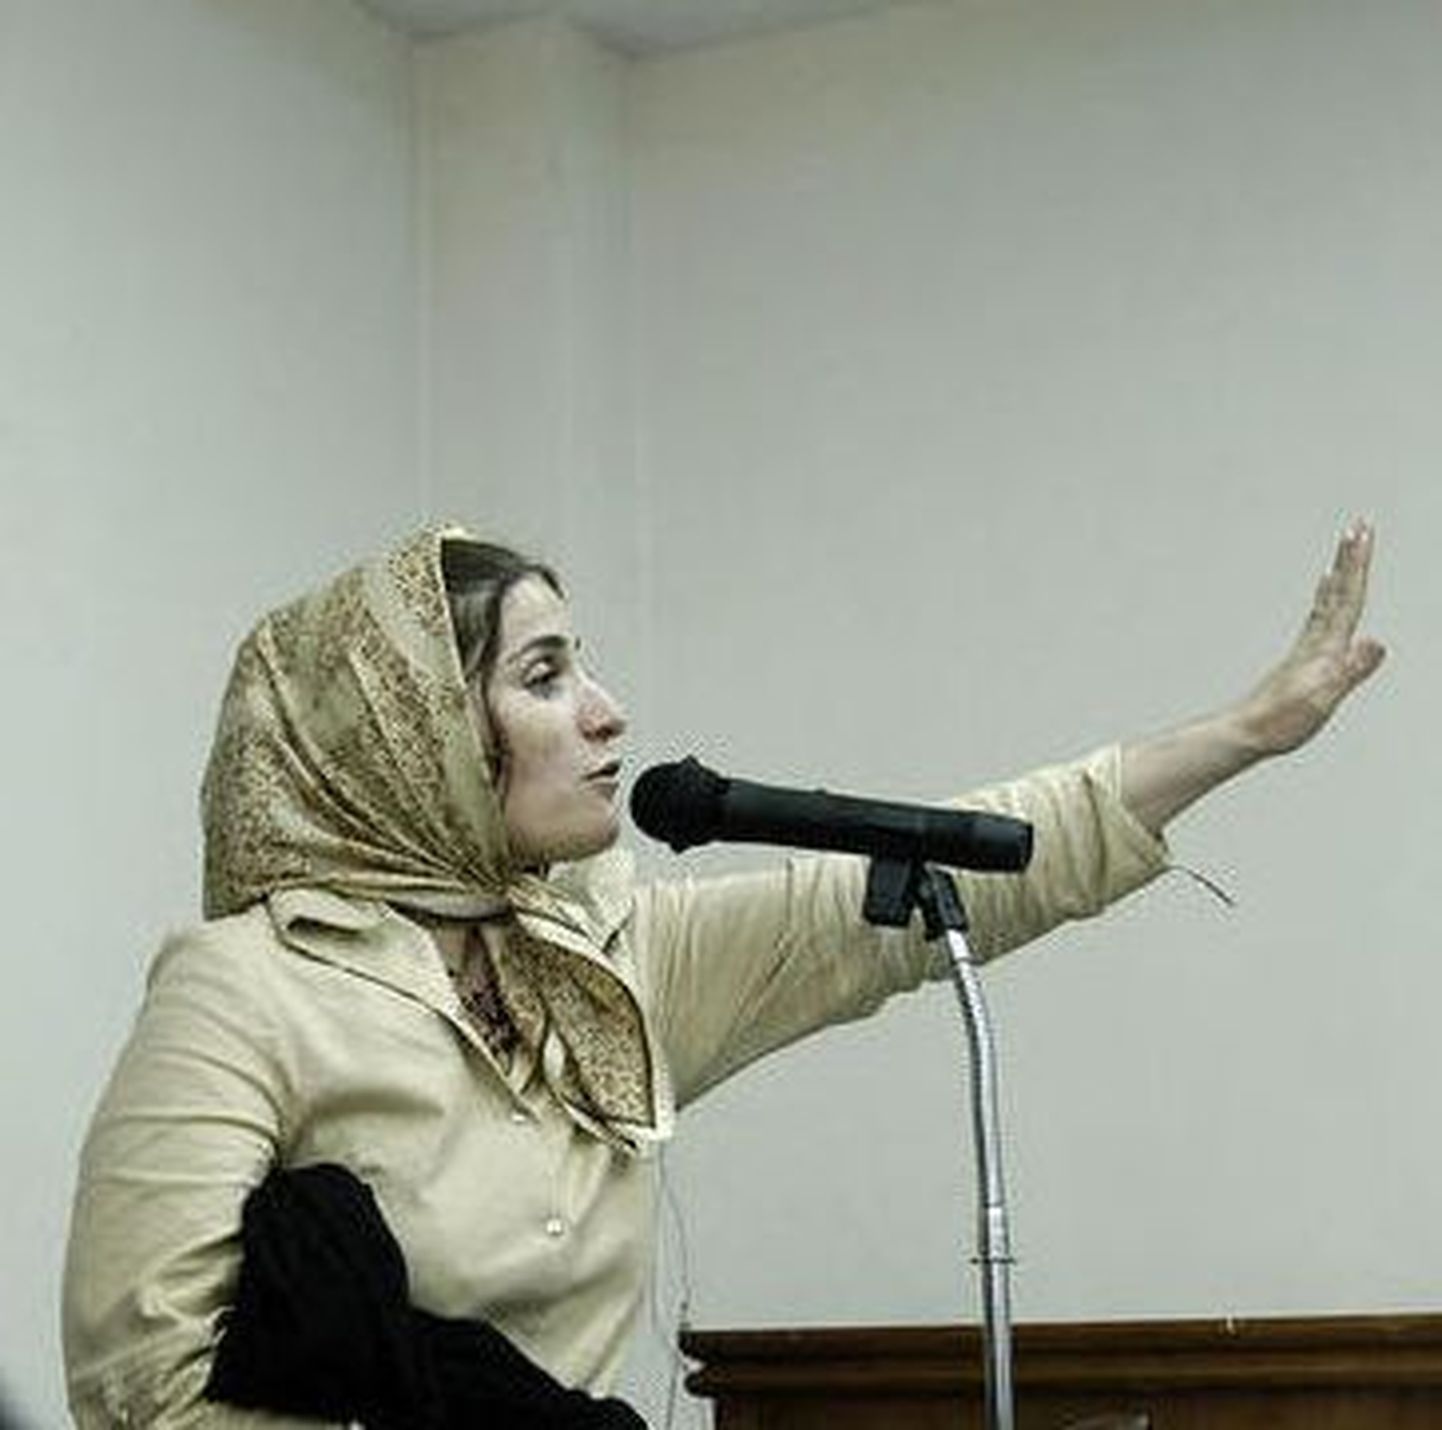 Iraani näitlejannale määrati 90 piitsahoopi